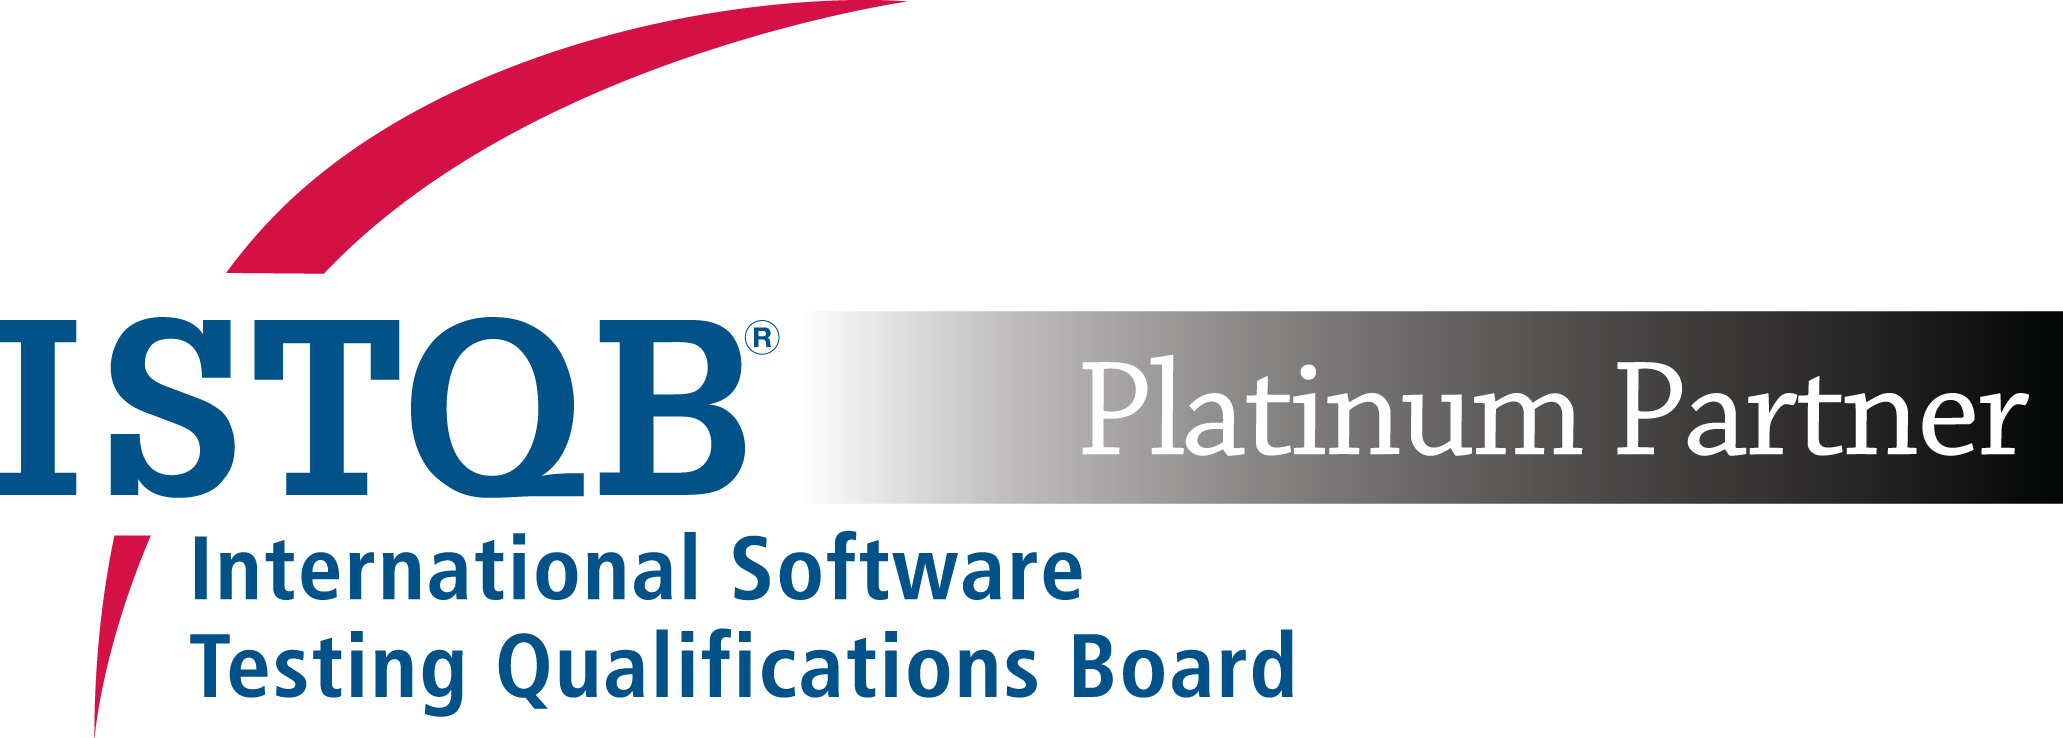 ISTQB_Platinum_logo.png